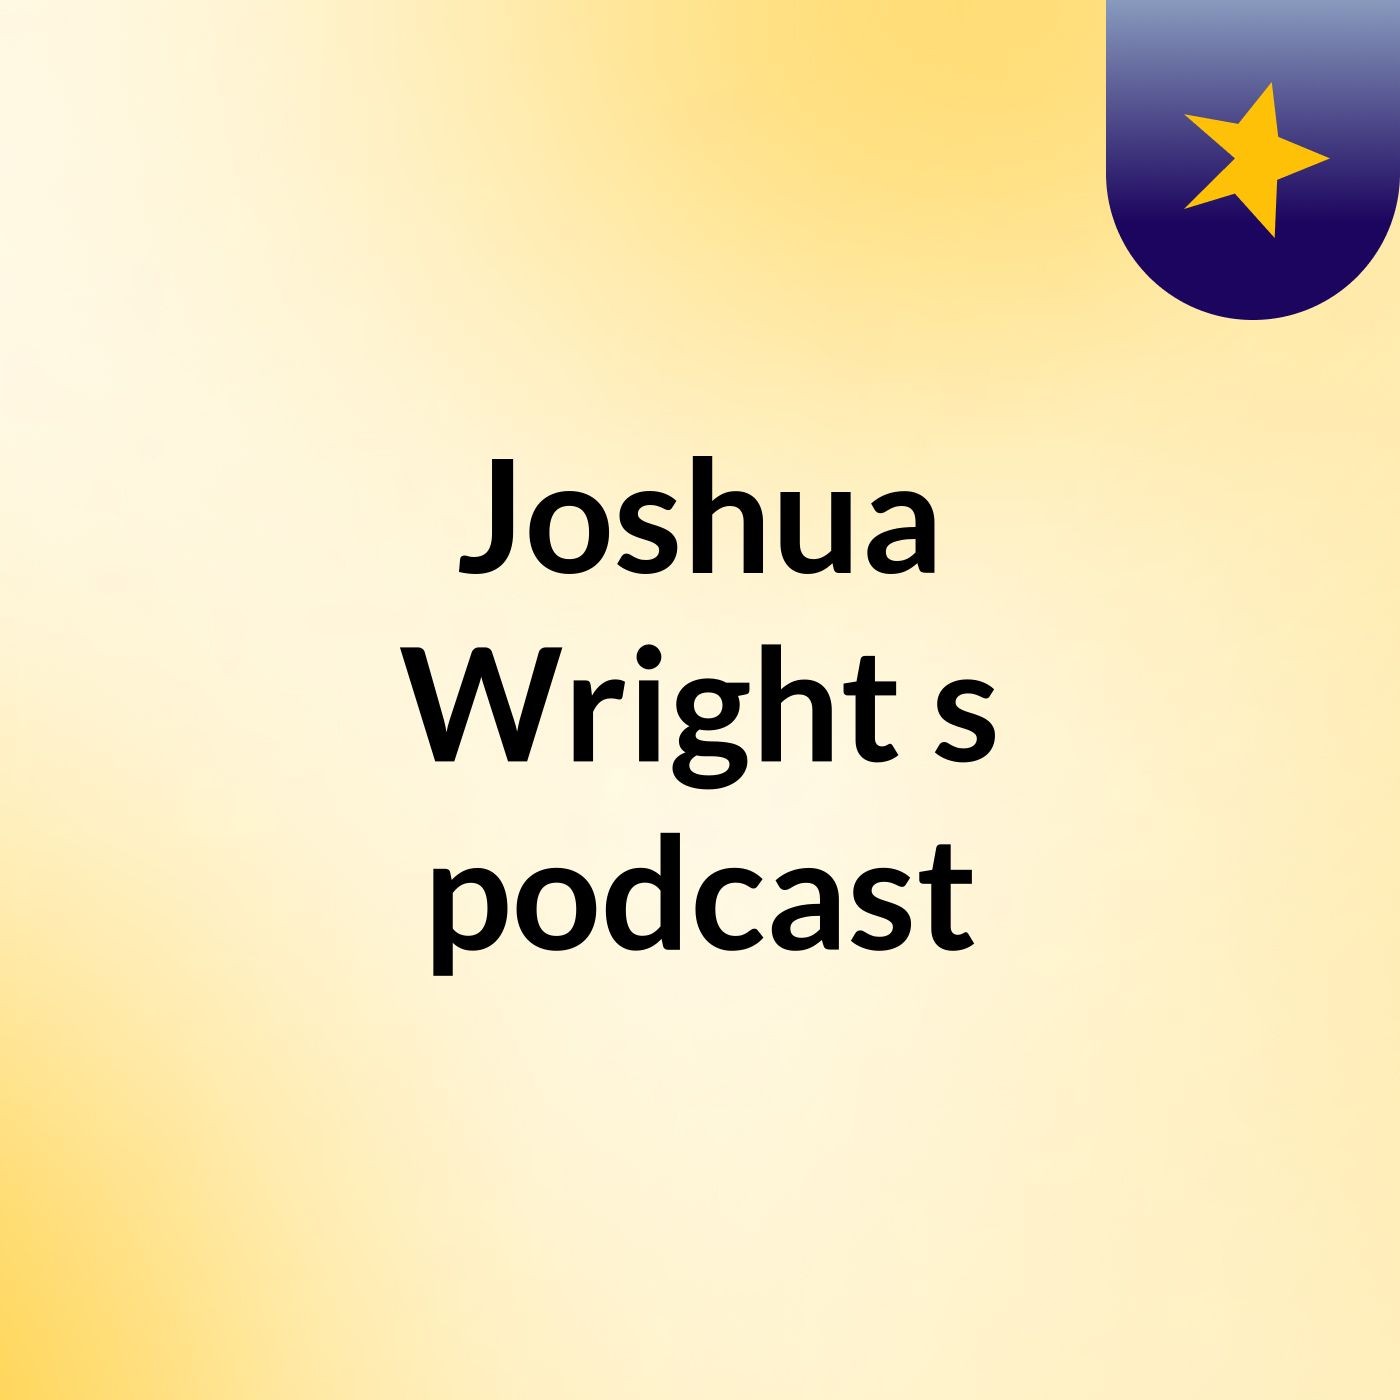 Joshua Wright's podcast